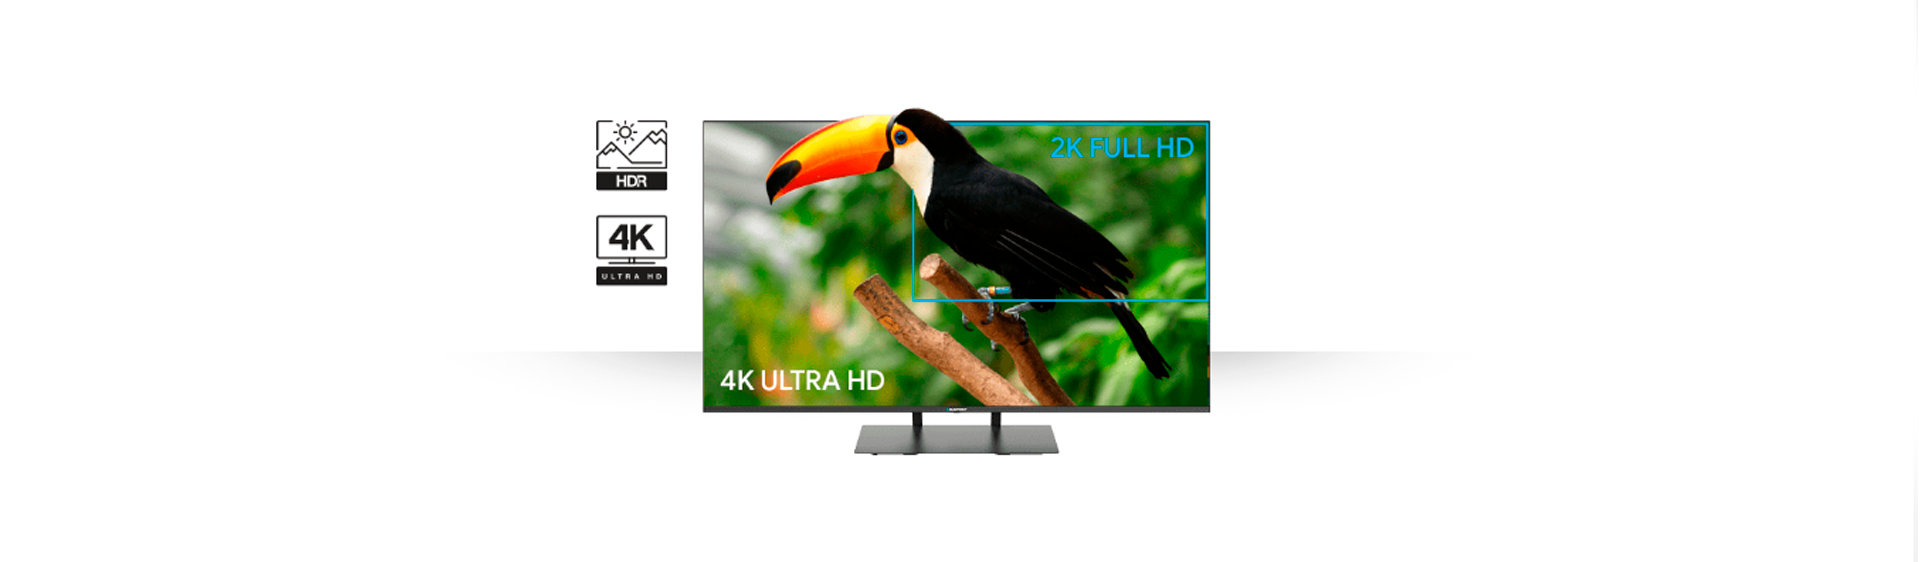 Телевизор UHD 4K Android TV Blaupunkt 55UB7000